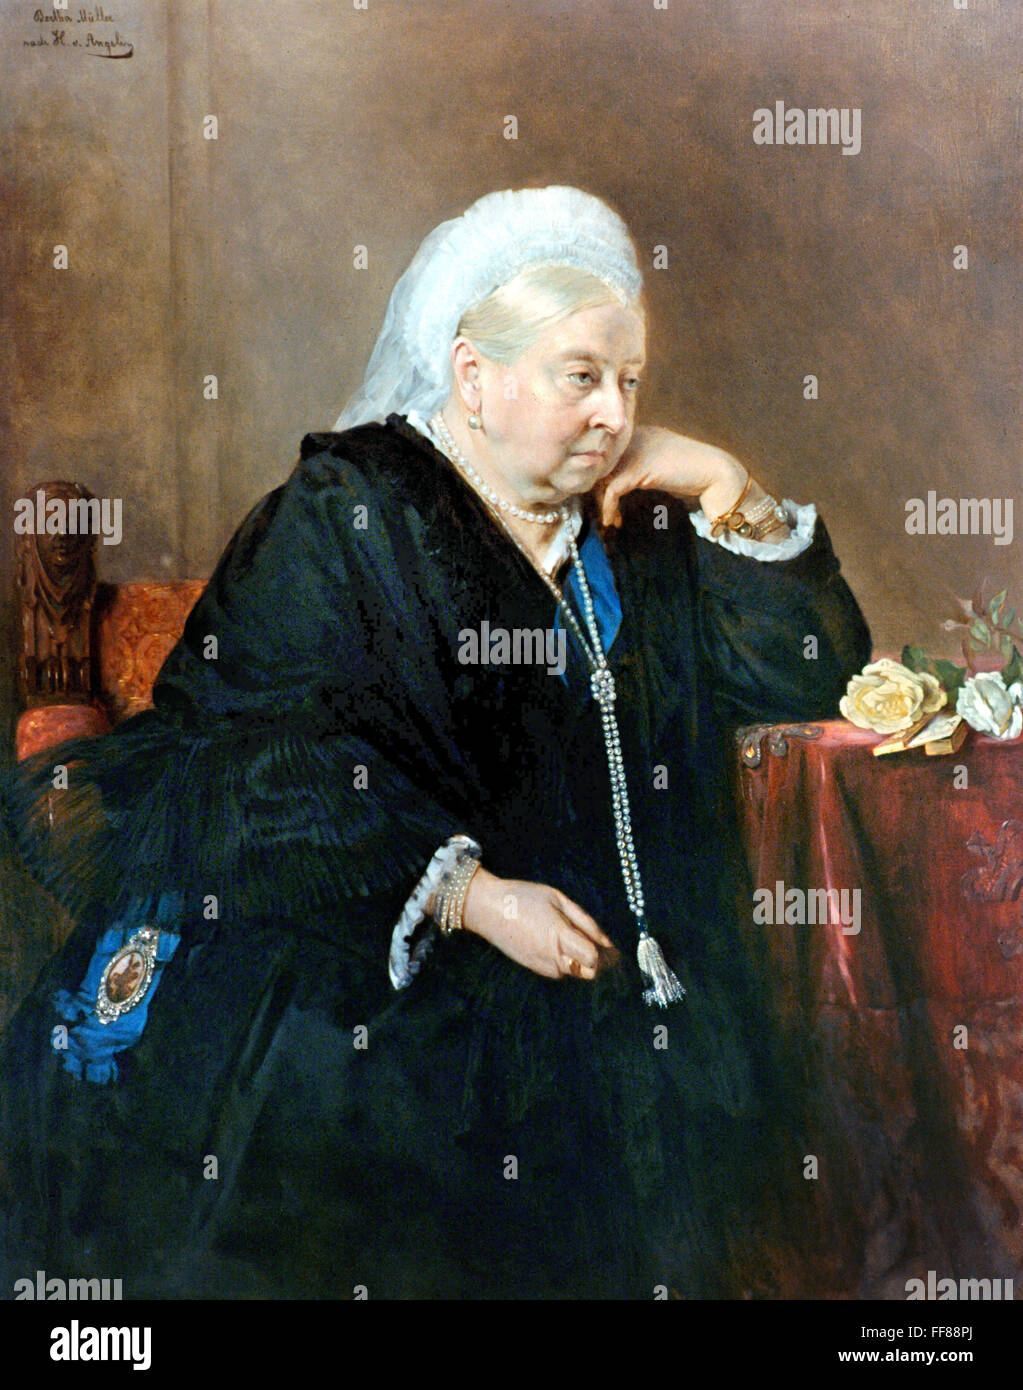 QUEEN VICTORIA OF ENGLAND /n(1819-1901). Queen of England, 1837-1901. Oil on canvas, 1900, by Bertha Mⁿller after Heinrich von Angeli. Stock Photo